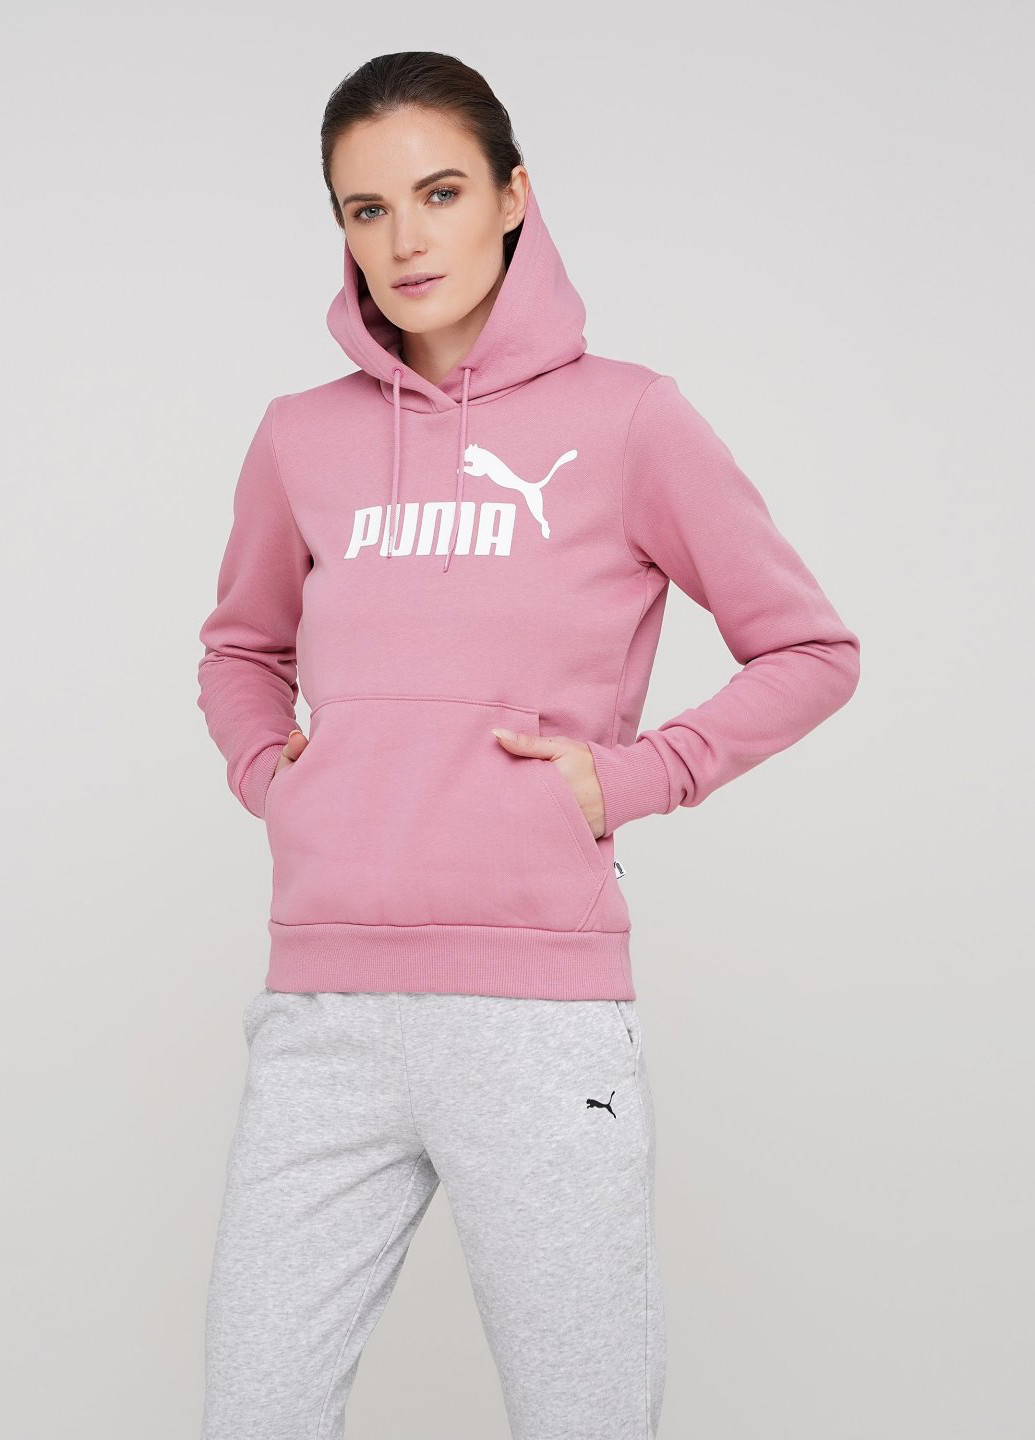 Худи Puma надписи розовые спортивные трикотаж, хлопок